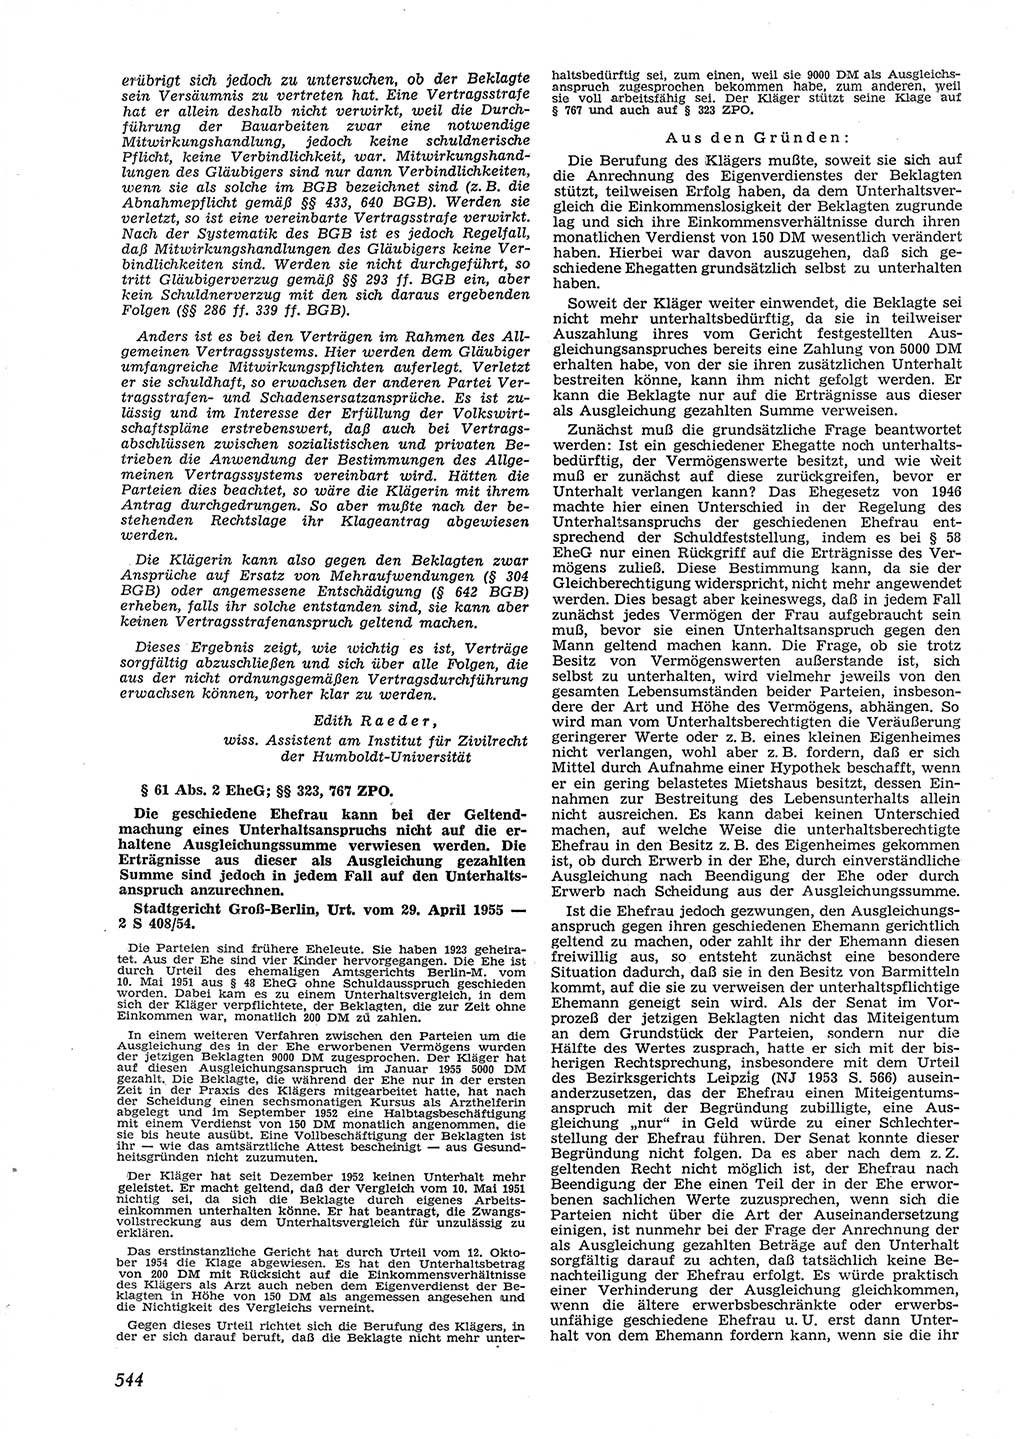 Neue Justiz (NJ), Zeitschrift für Recht und Rechtswissenschaft [Deutsche Demokratische Republik (DDR)], 9. Jahrgang 1955, Seite 544 (NJ DDR 1955, S. 544)